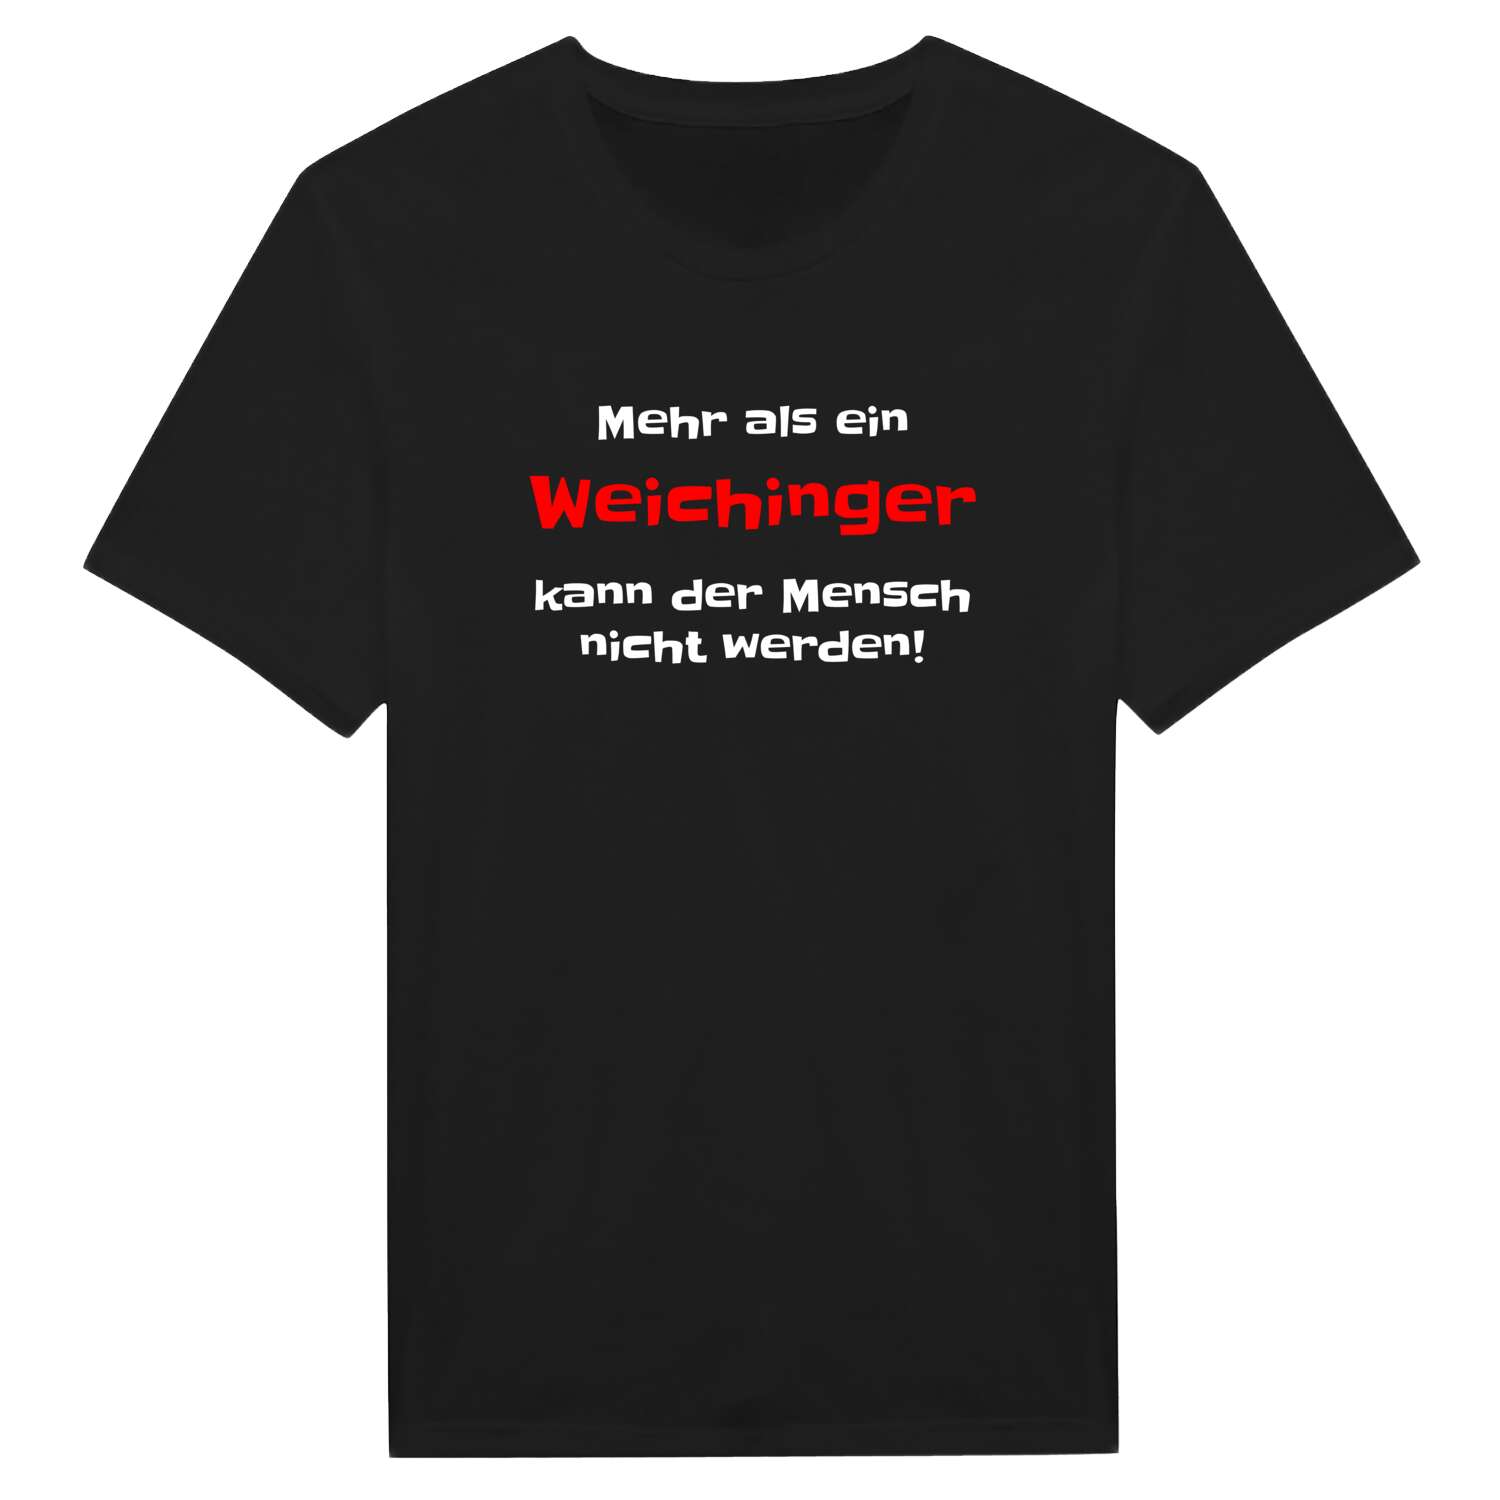 Weiching T-Shirt »Mehr als ein«